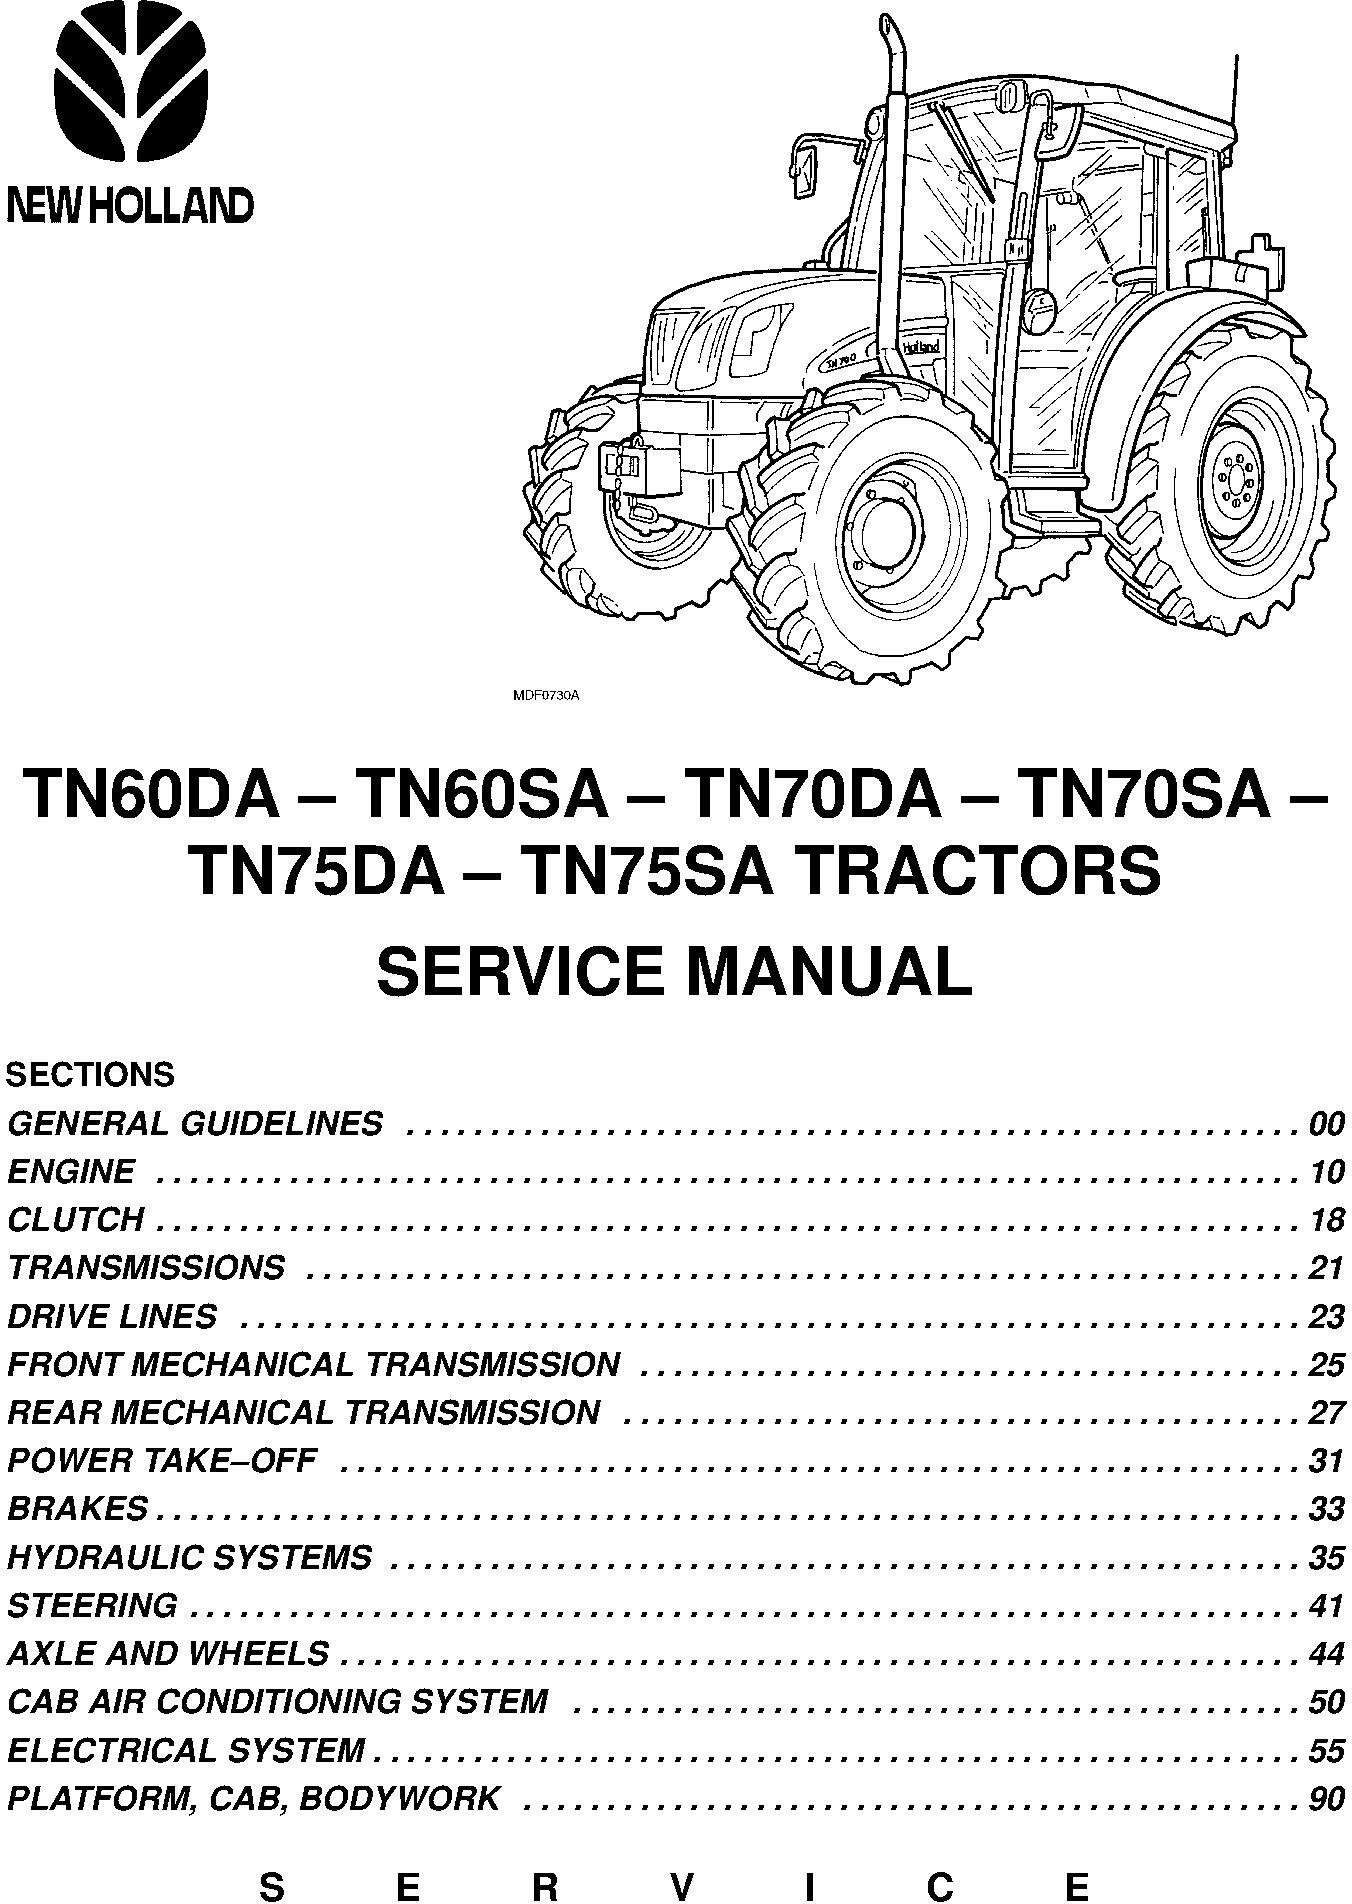 New Holland TN60DA, TN70DA, TN75DA, TN60SA, TN70SA, TN75SA Tractors Service Manual - 19996